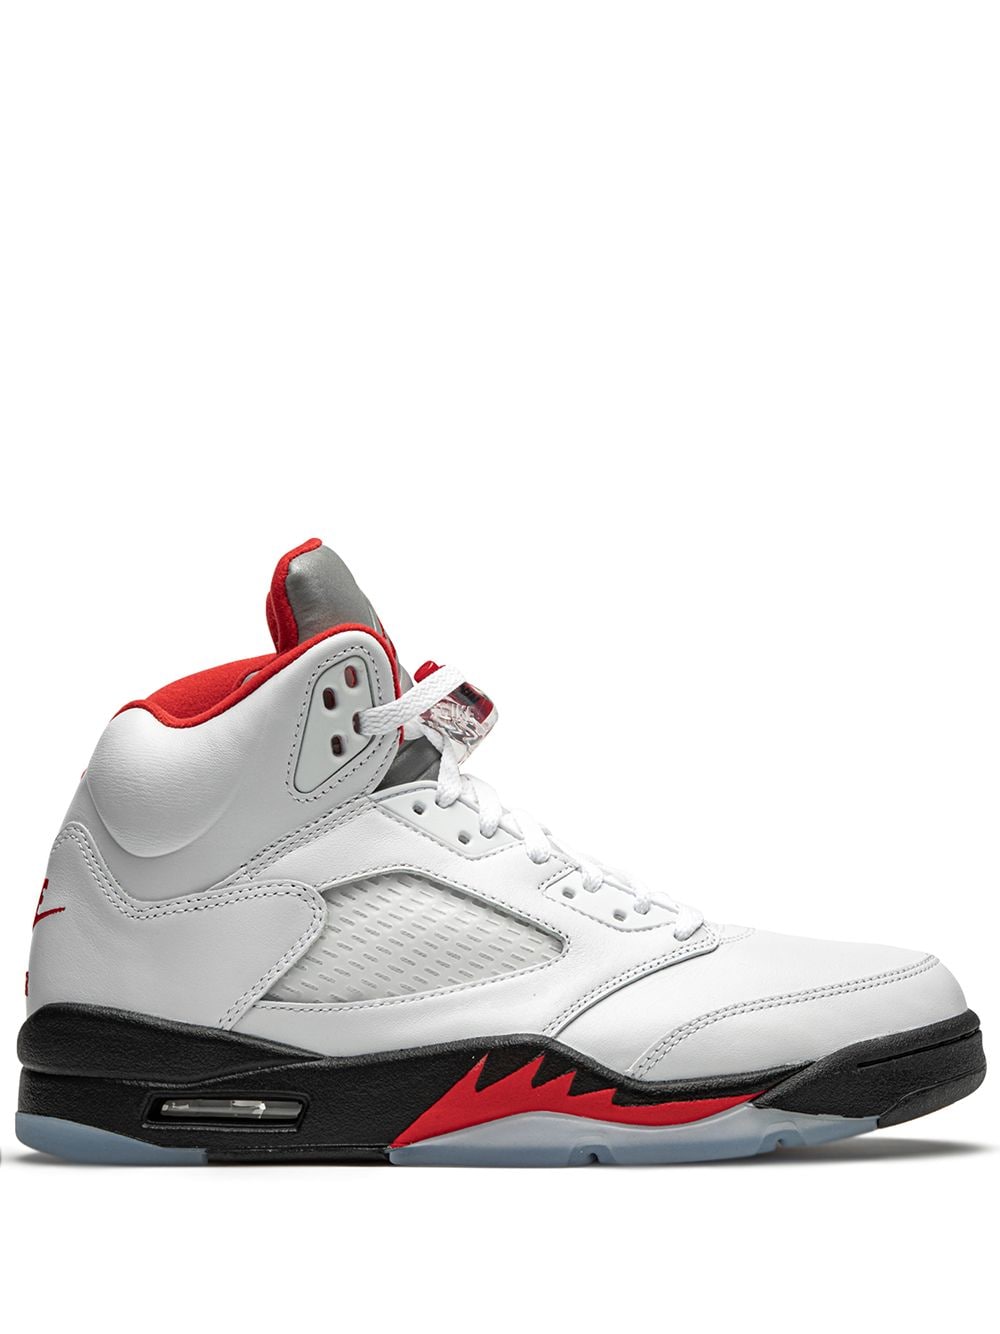 Jordan Air Jordan 5 Retro "Fire Red Silver Tongue 2020" sneakers - White